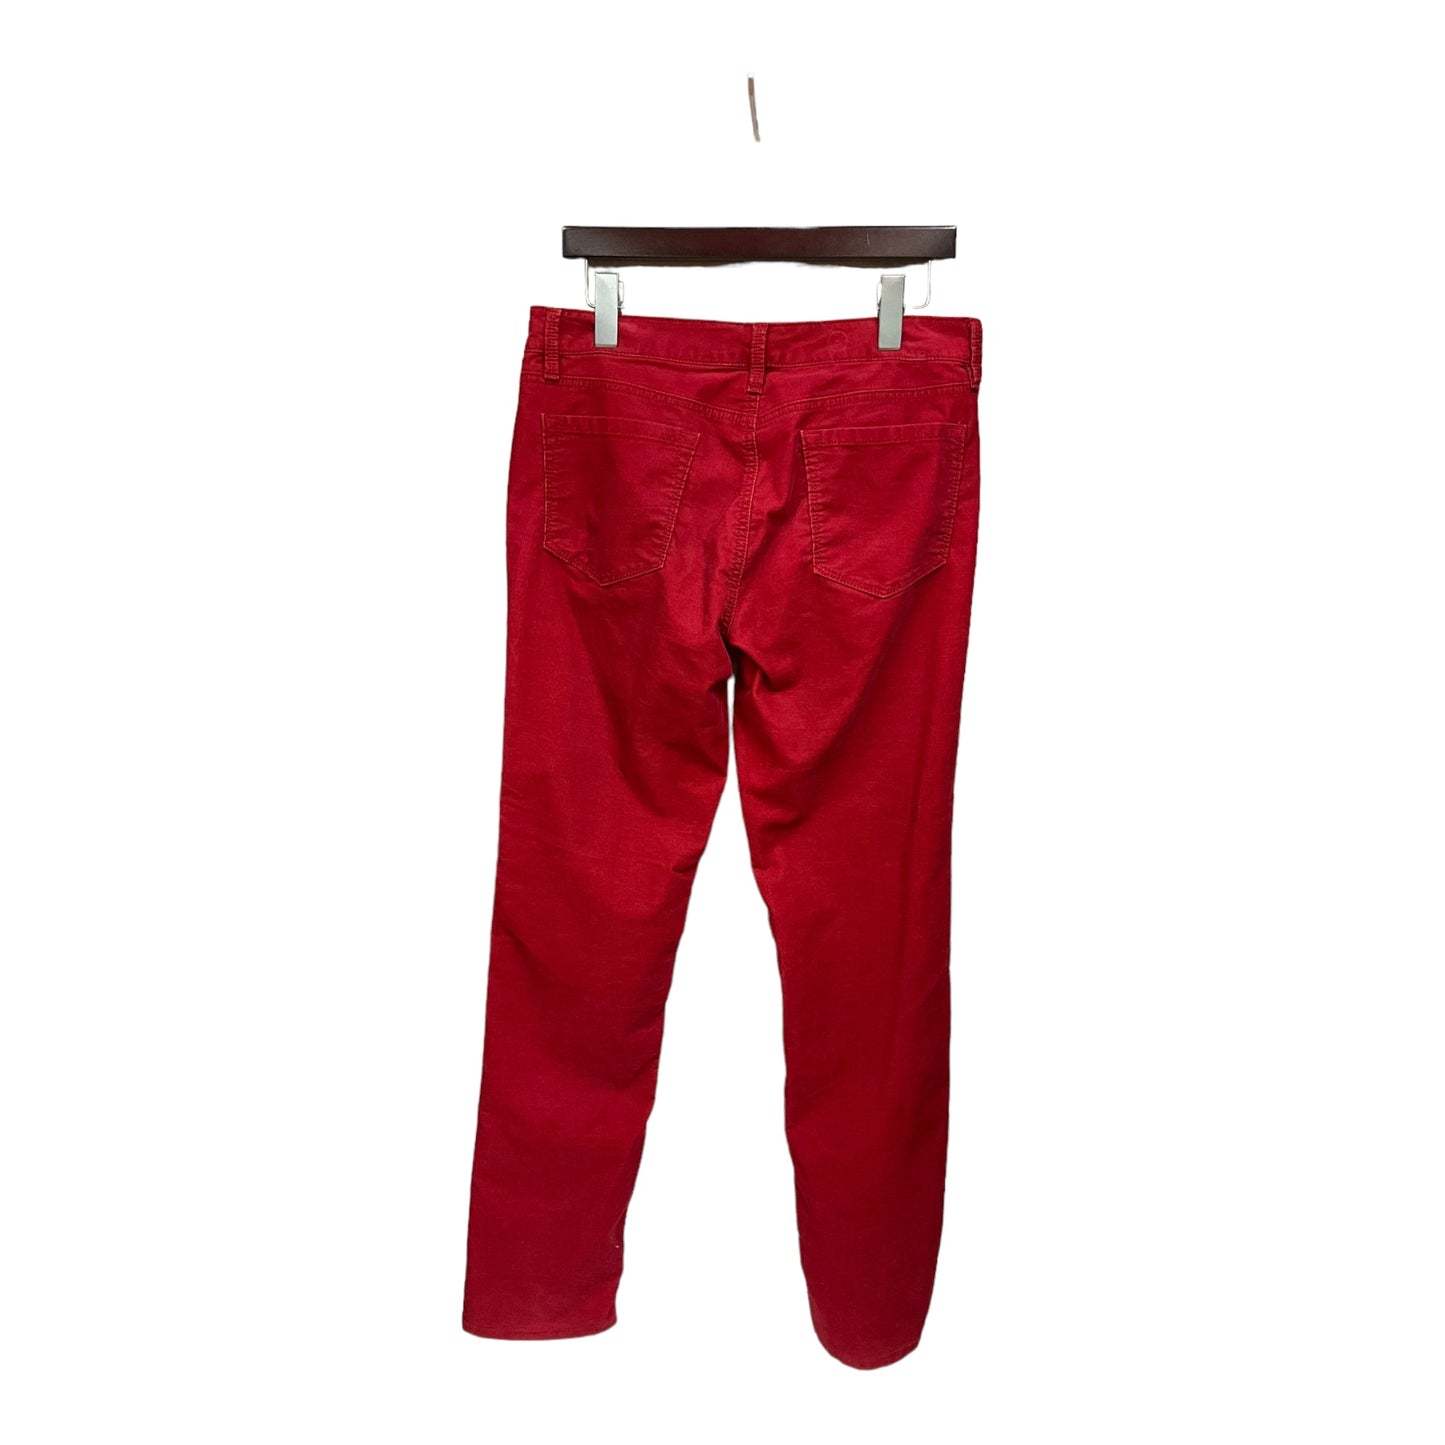 Pants Corduroy By Loft  Size: 8